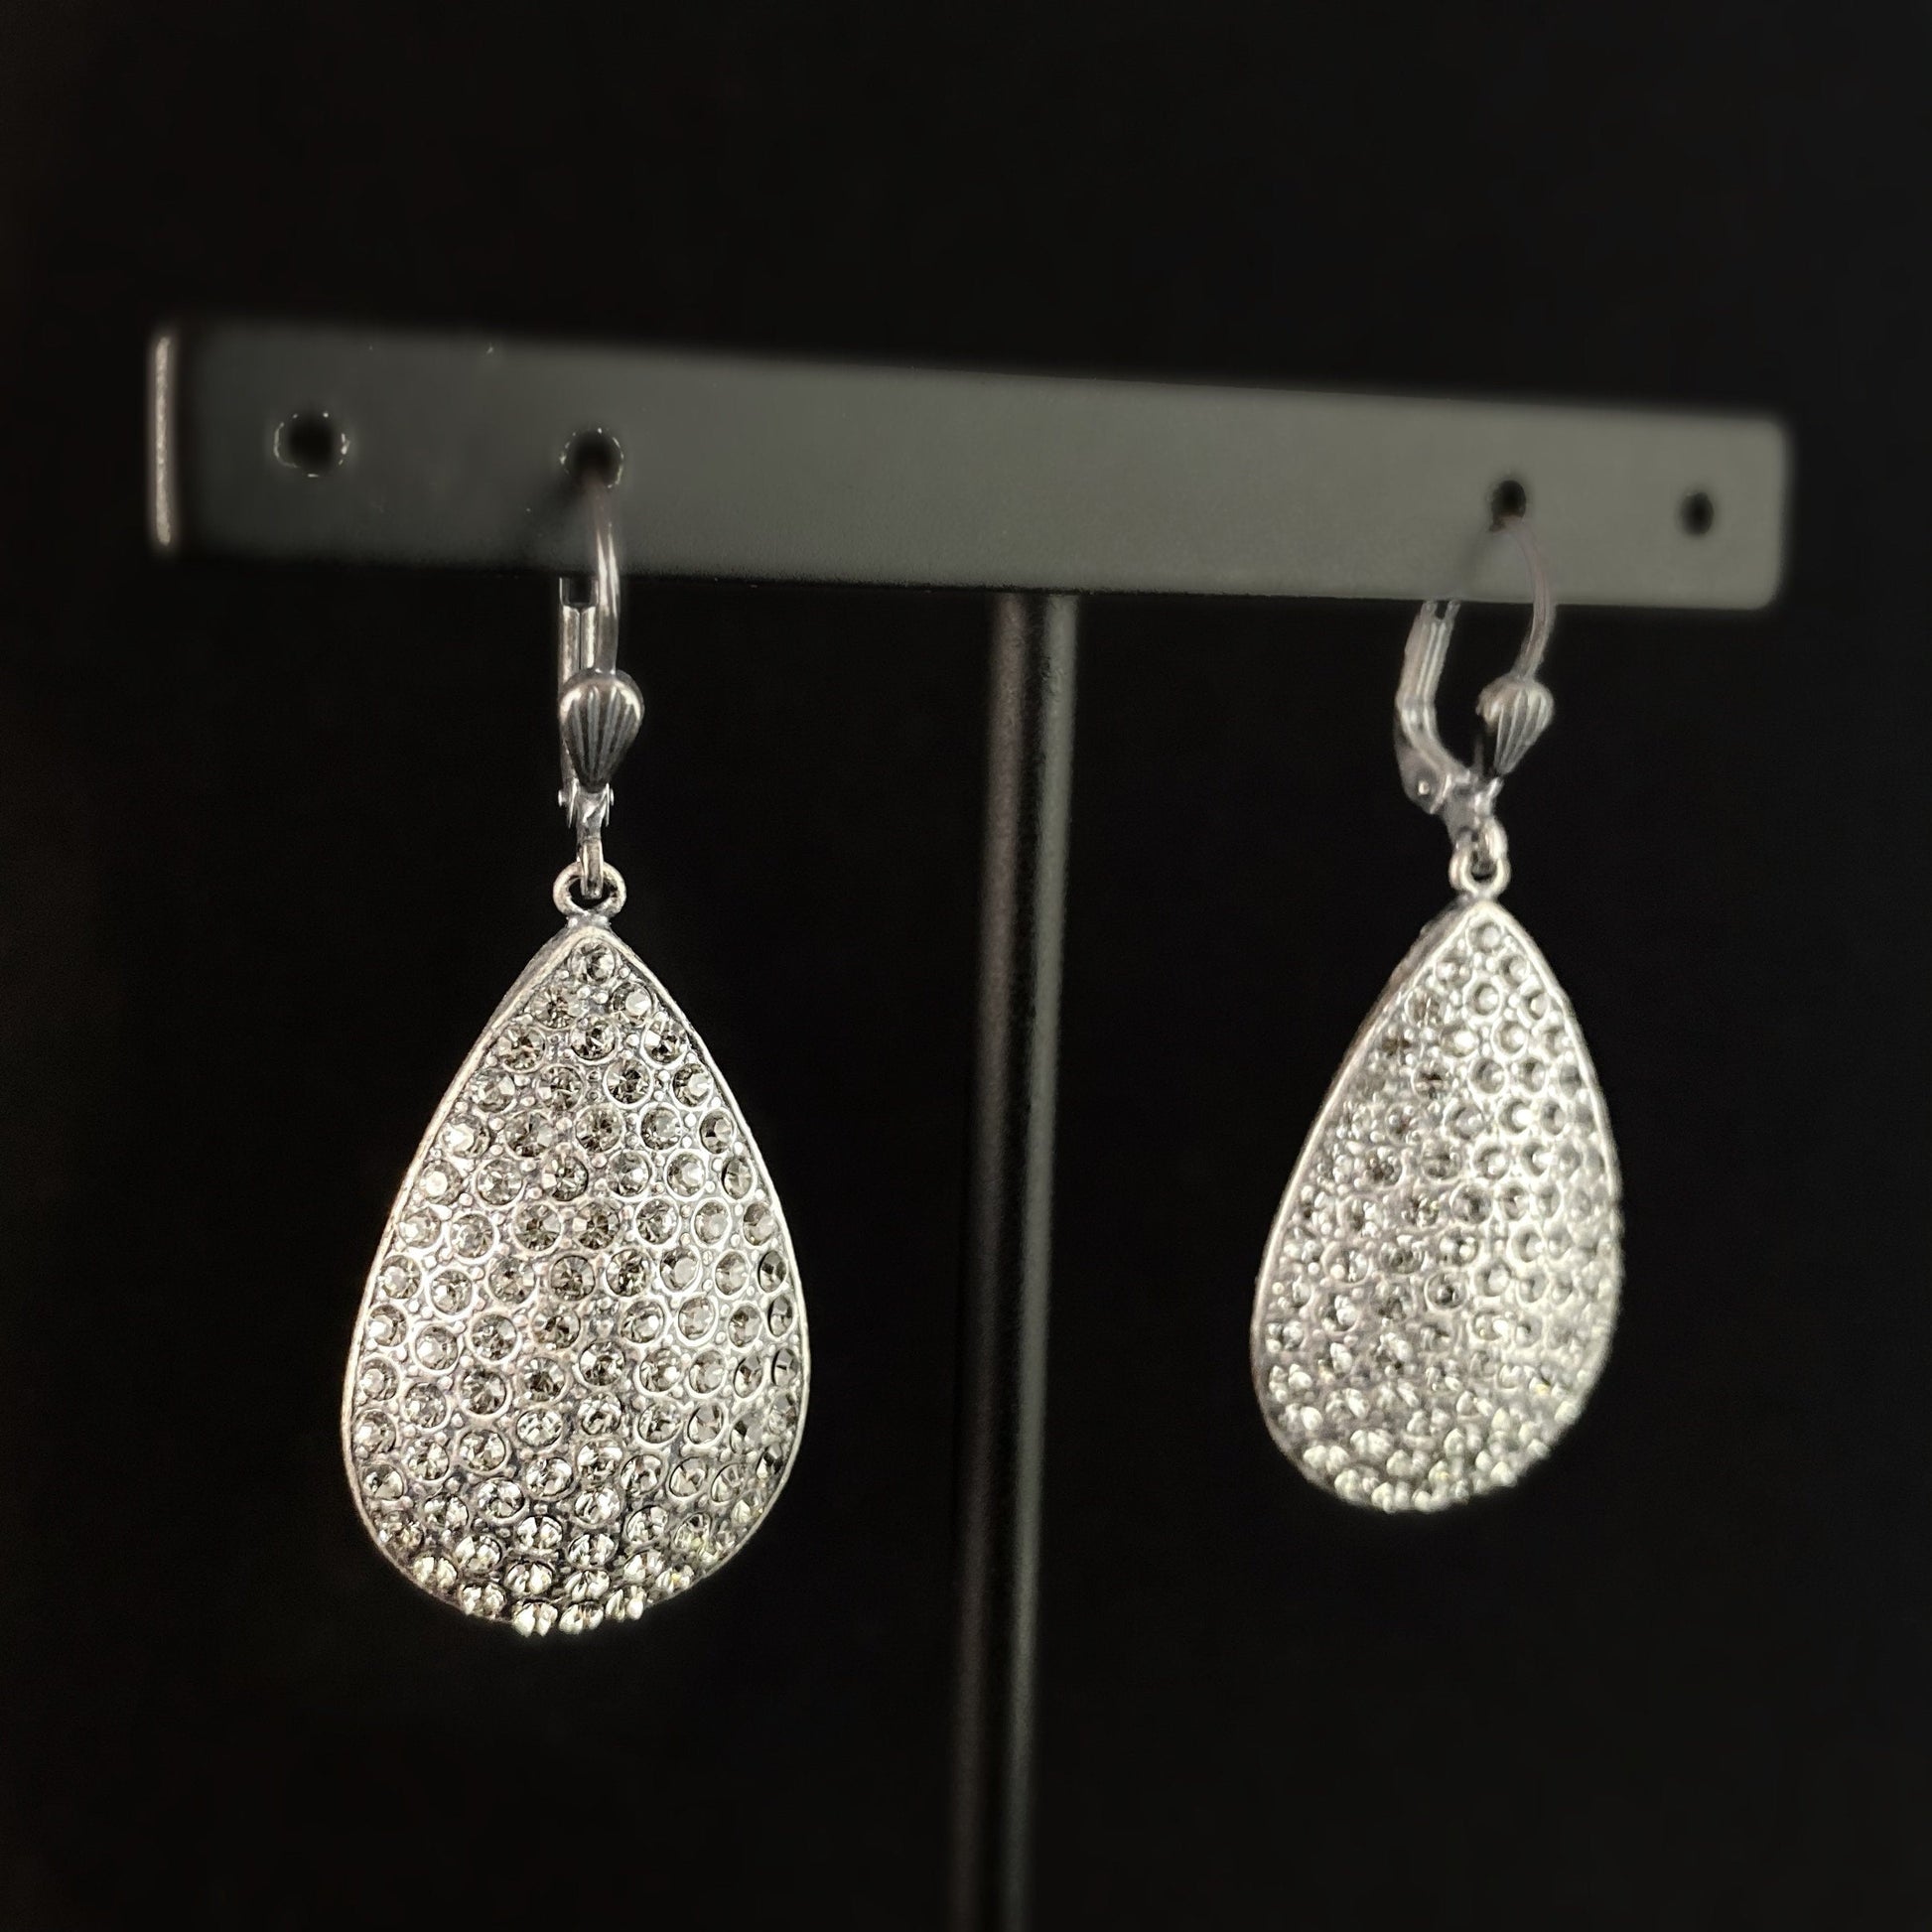 Teardrop Shape Swarovski Crystal Earrings, Clear - La Vie Parisienne by Catherine Popesco